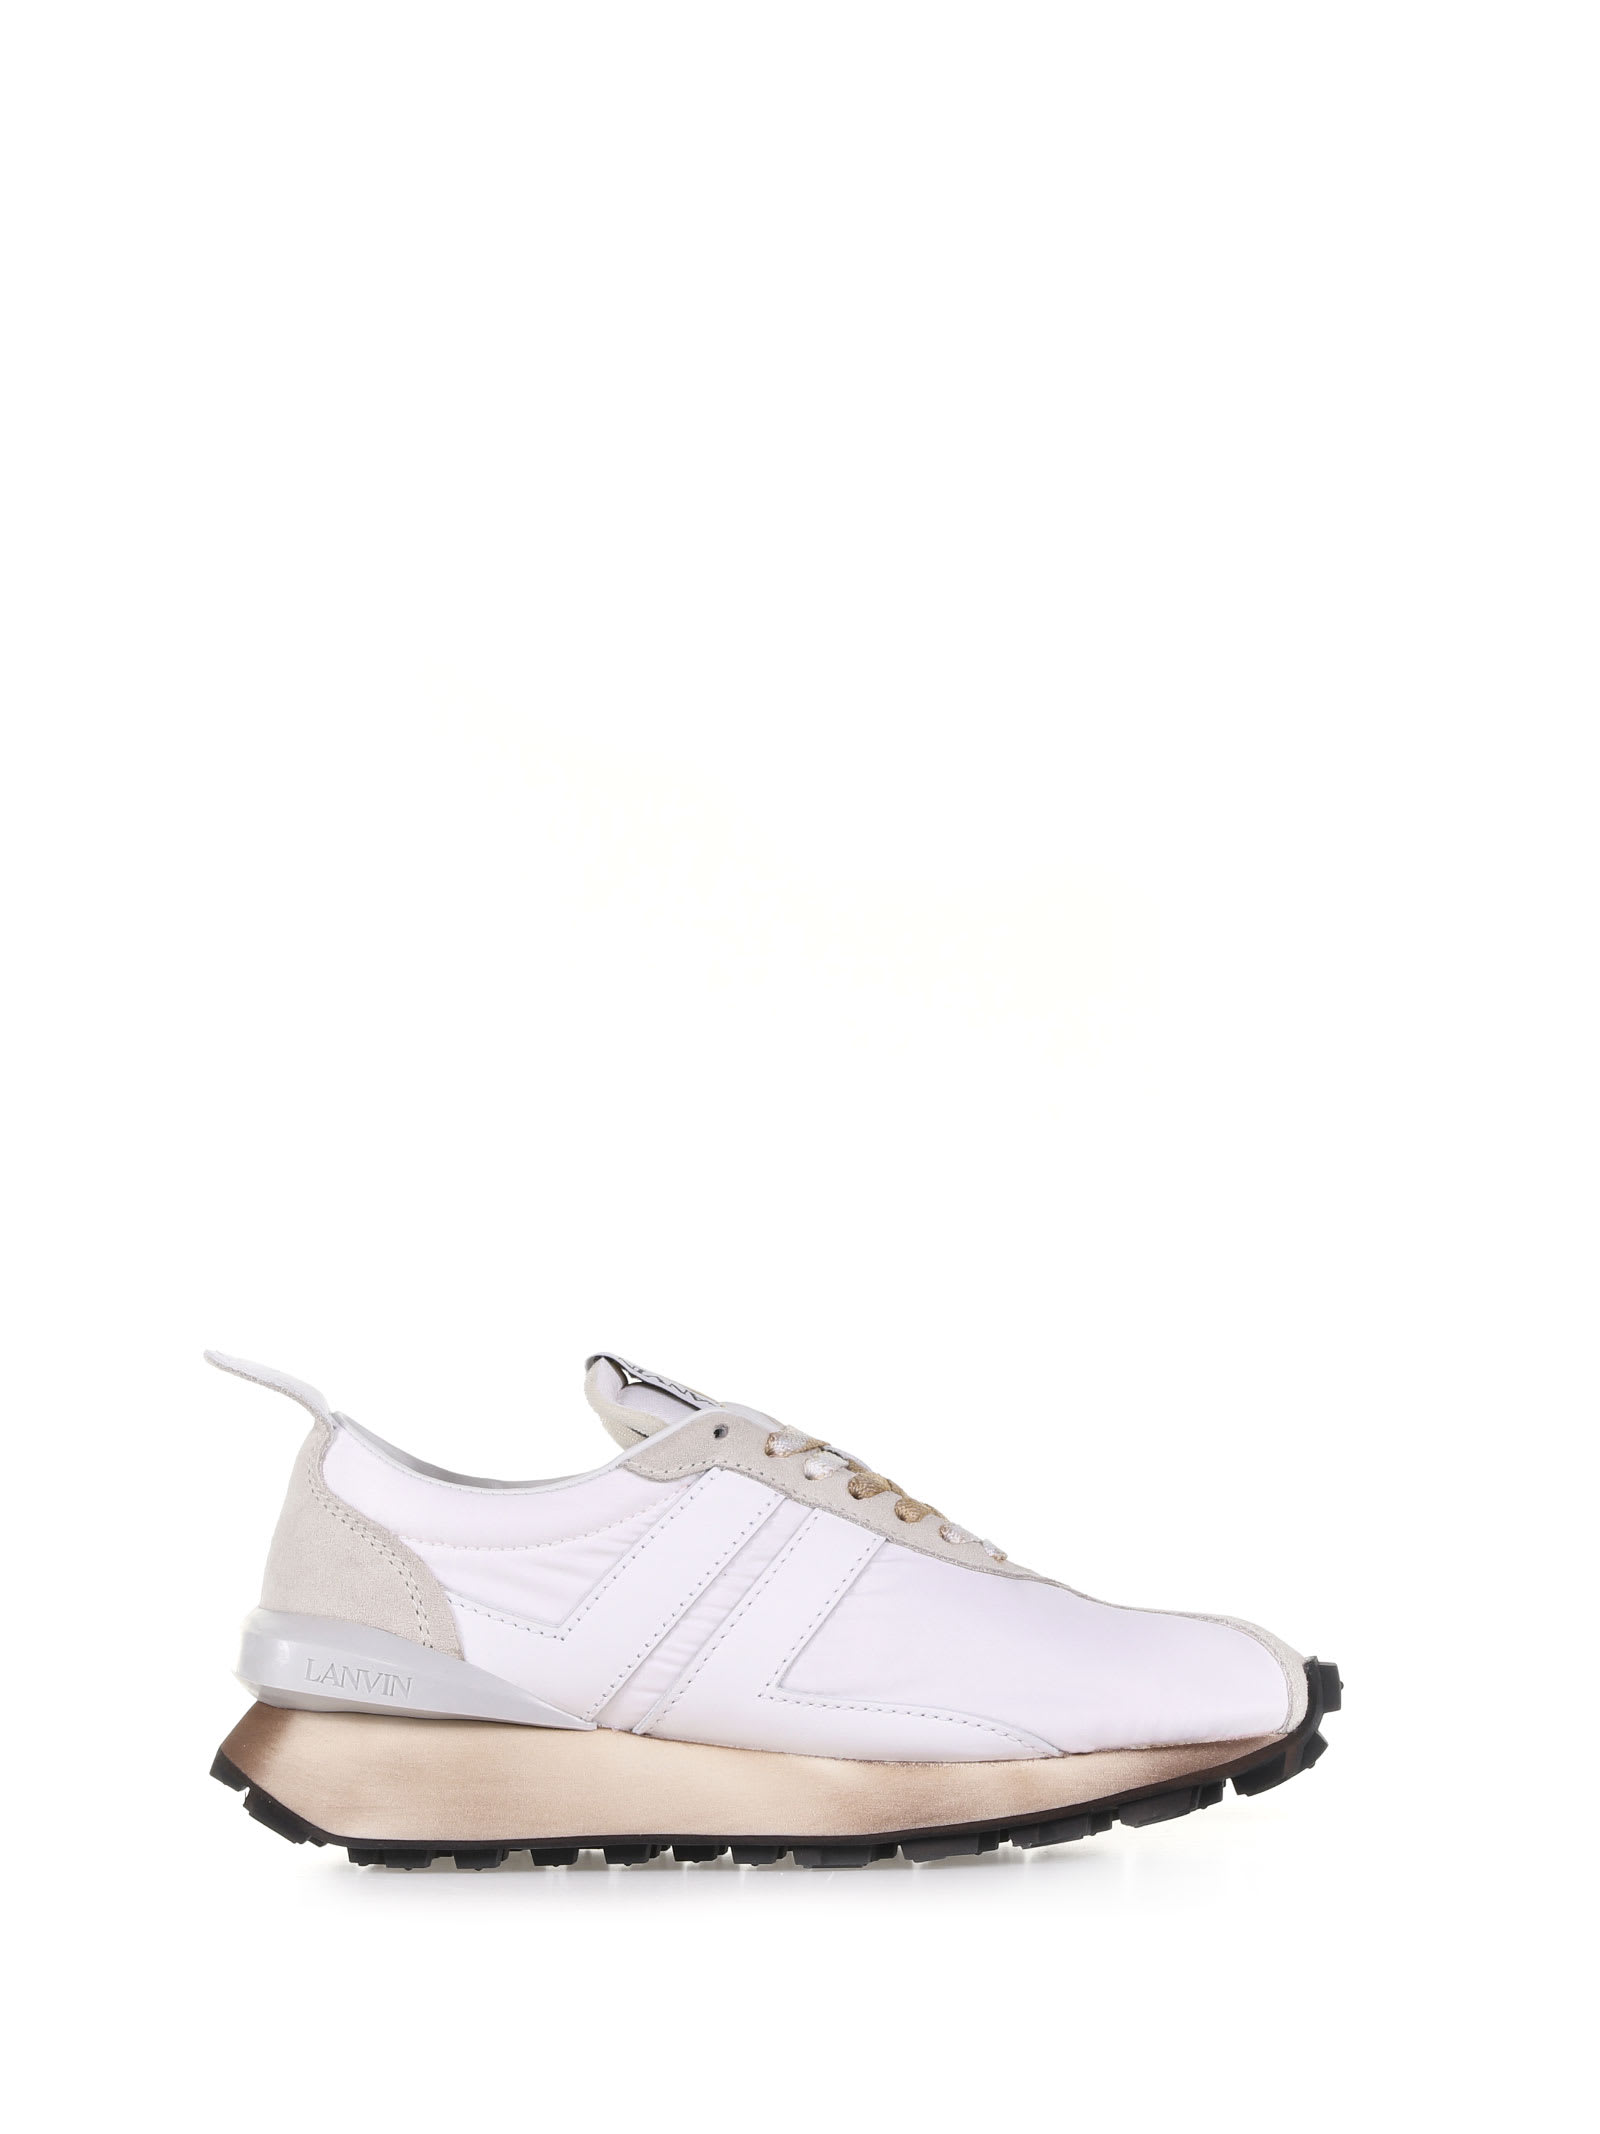 Lanvin Optical White Running Sneaker